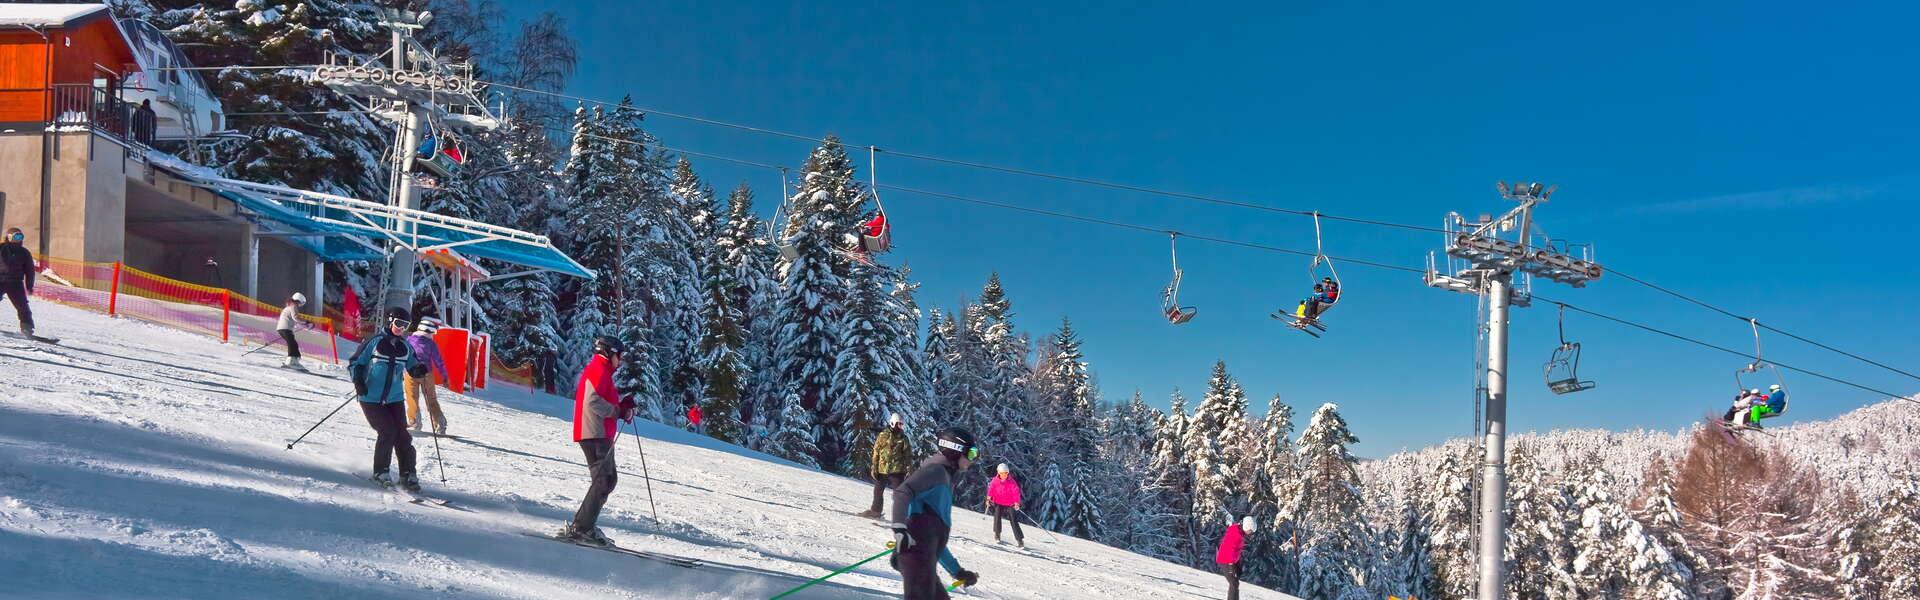 Image: Stacje narciarskie w Małopolsce – każdy znajdzie odpowiednią dla siebie